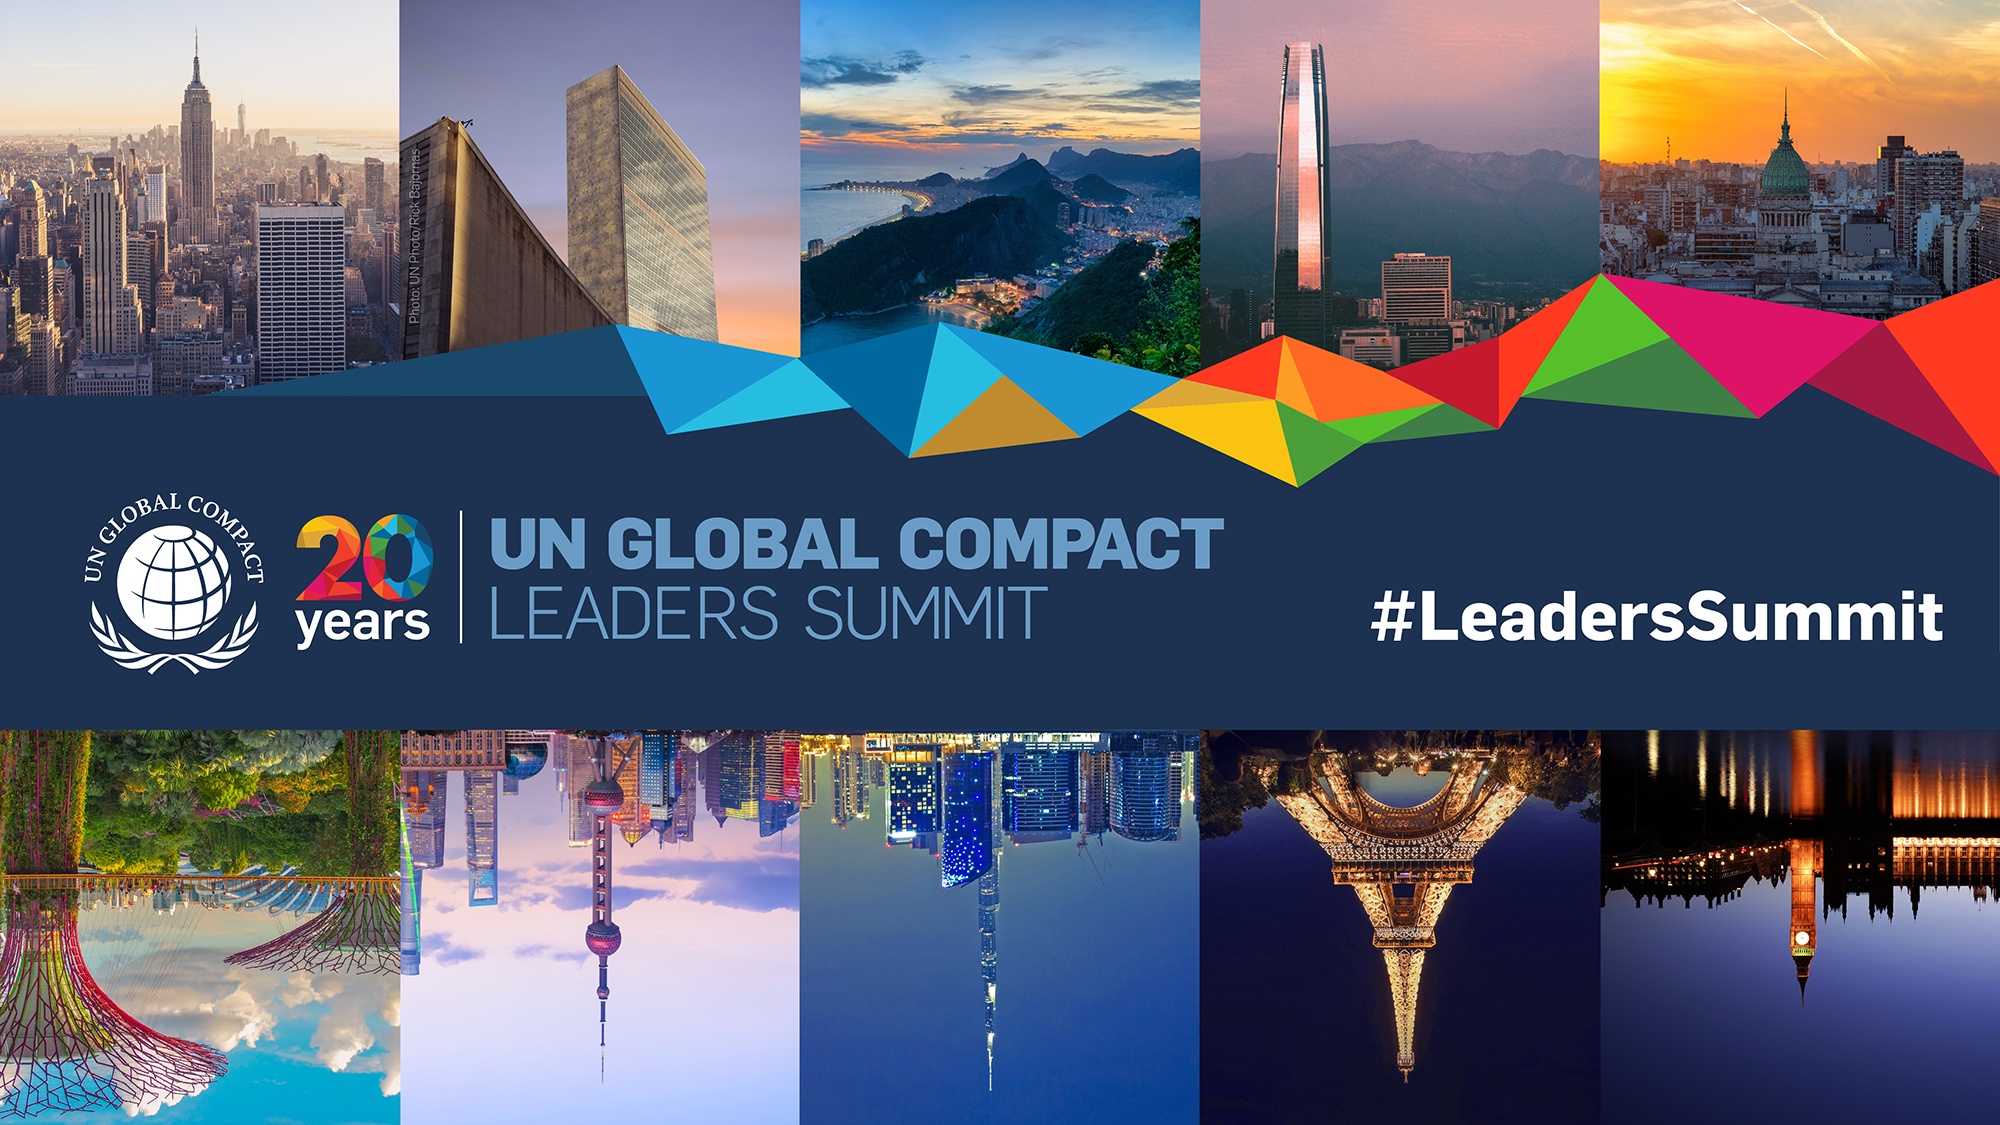 YK:n Global Compact Leaders Summit -virtuaalitapahtuma houkutteli mukaan yli 20 000 osallistujaa yli 180 maasta.